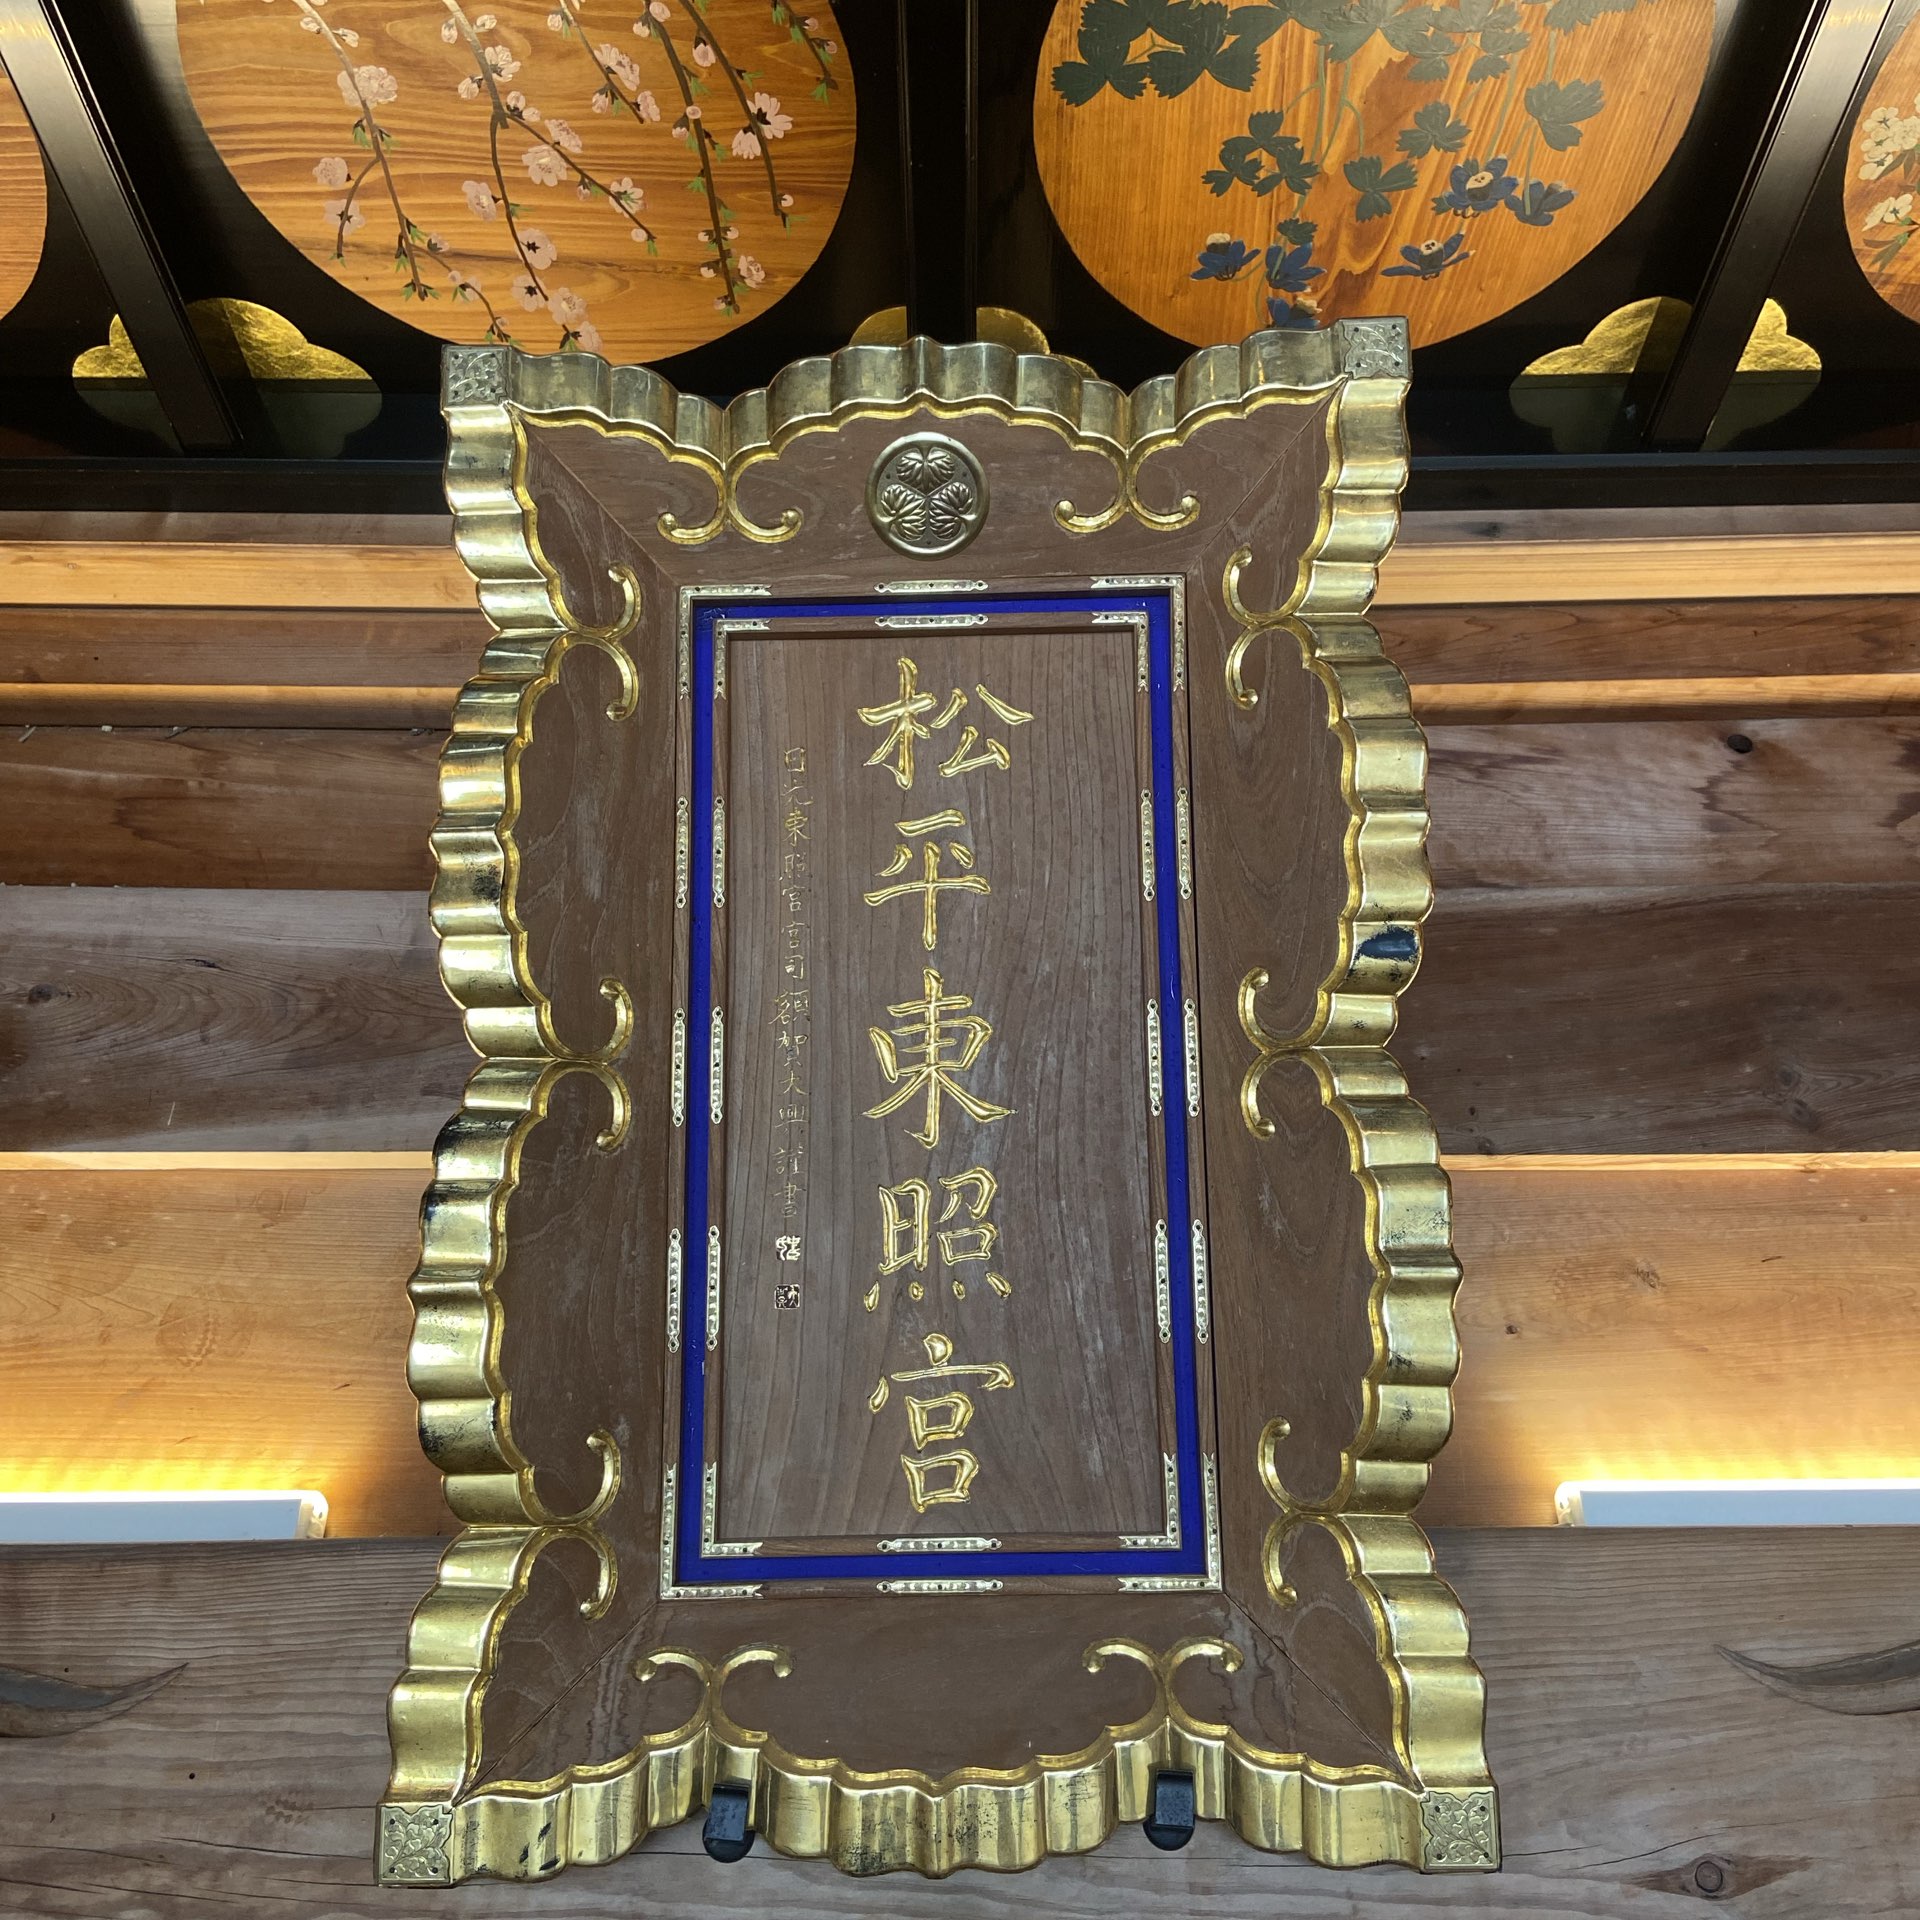 位于爱知县丰田市的松平东照宫是与德川家康有渊源的历史神社。您可以进入主神殿,这是很少见的神社,您可以